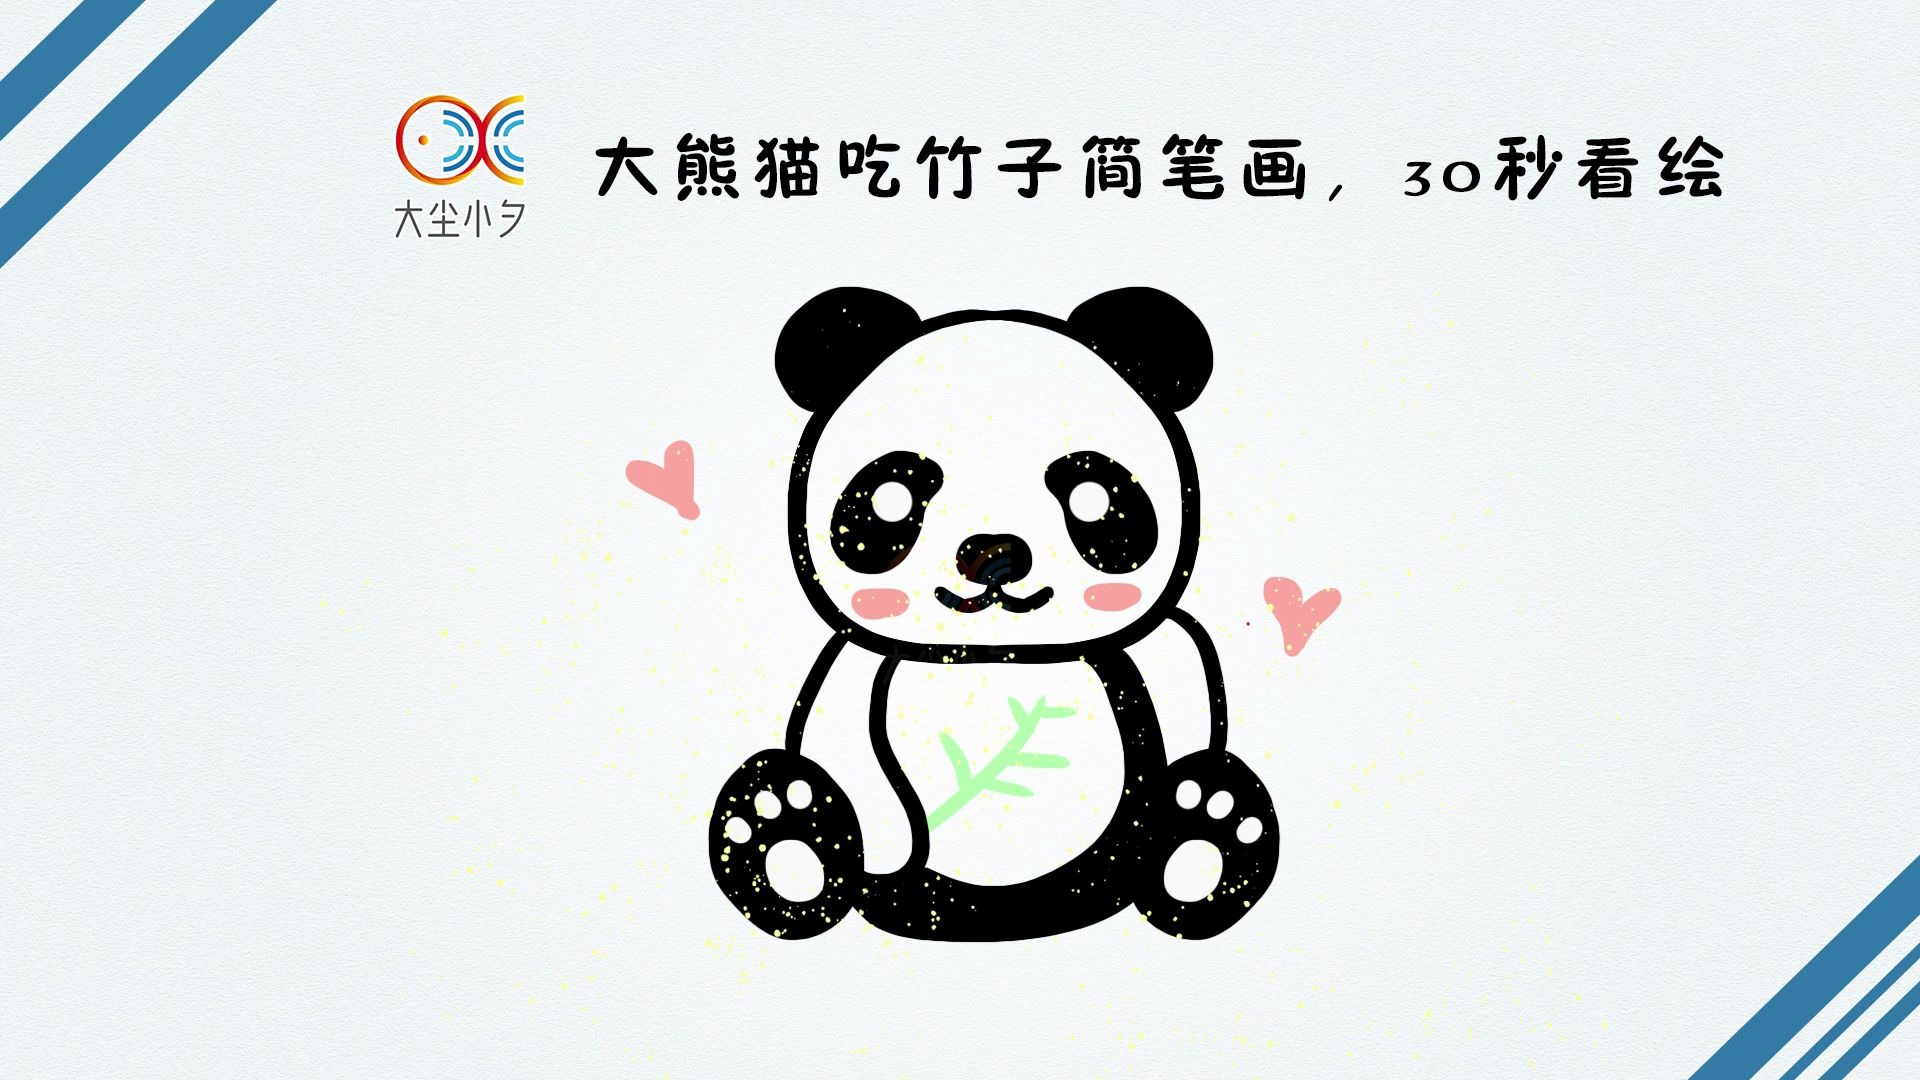 教你画大熊猫吃竹子简笔画,30秒看绘